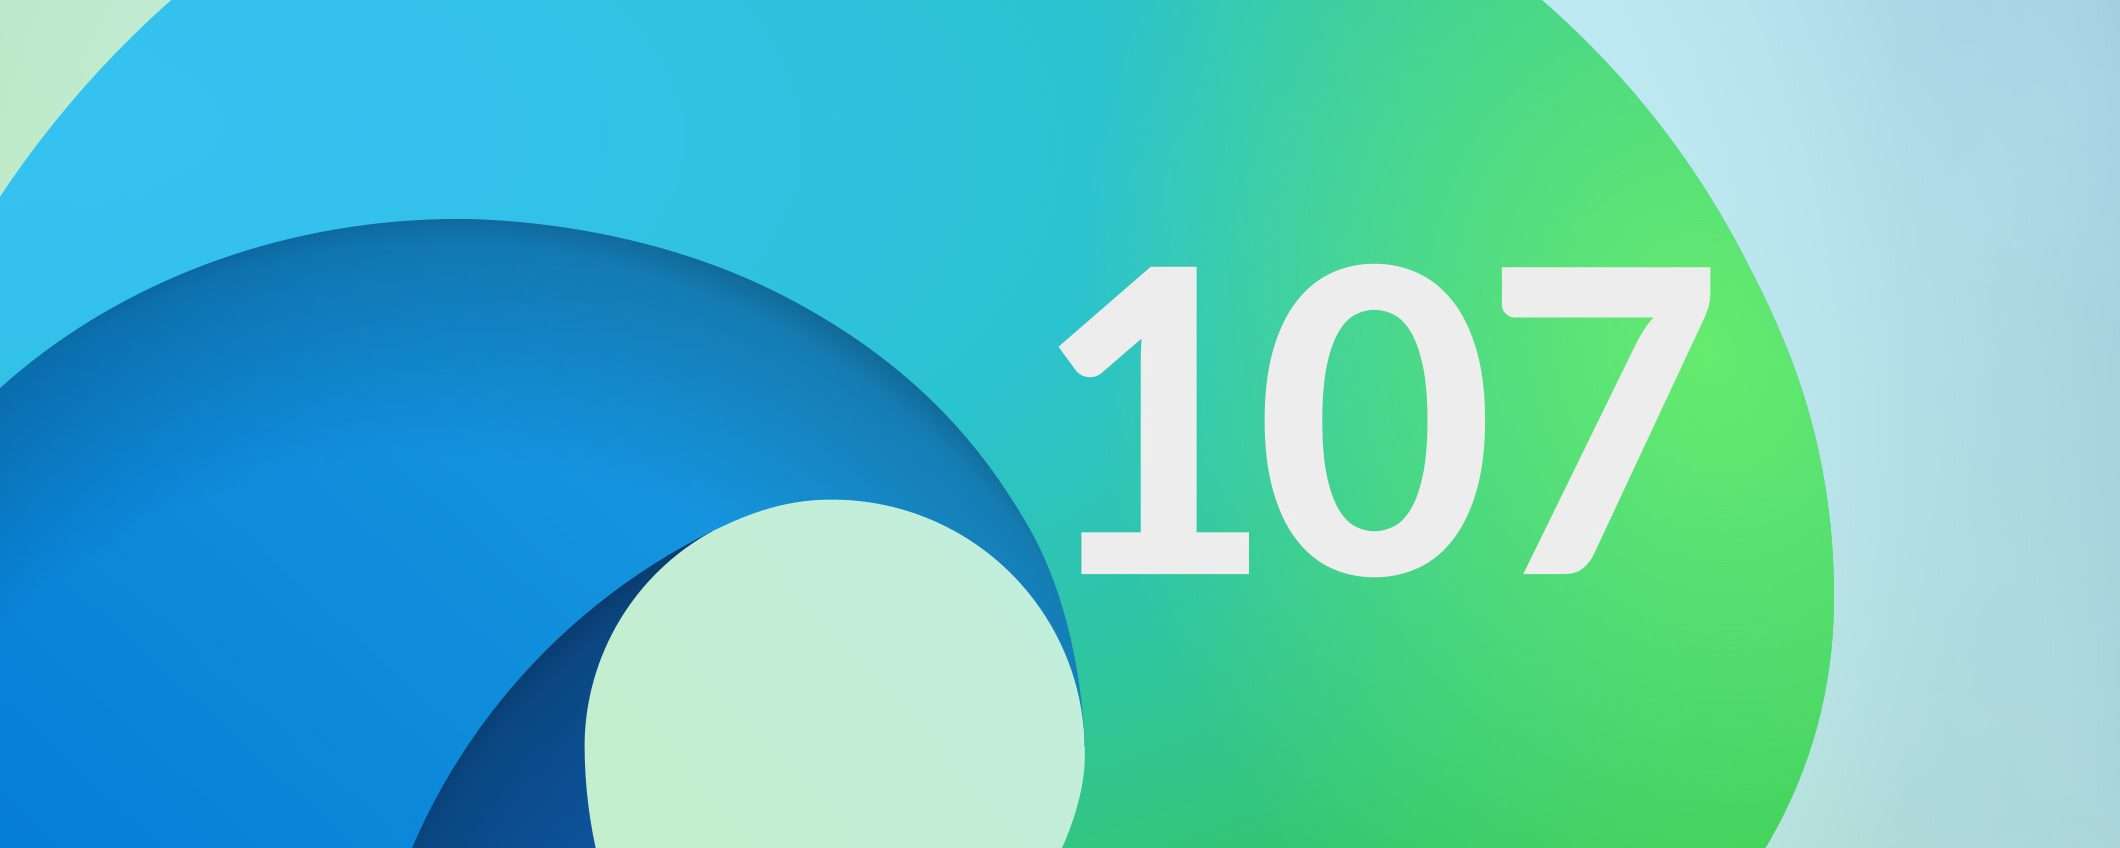 Edge 107: le novità del browser Microsoft